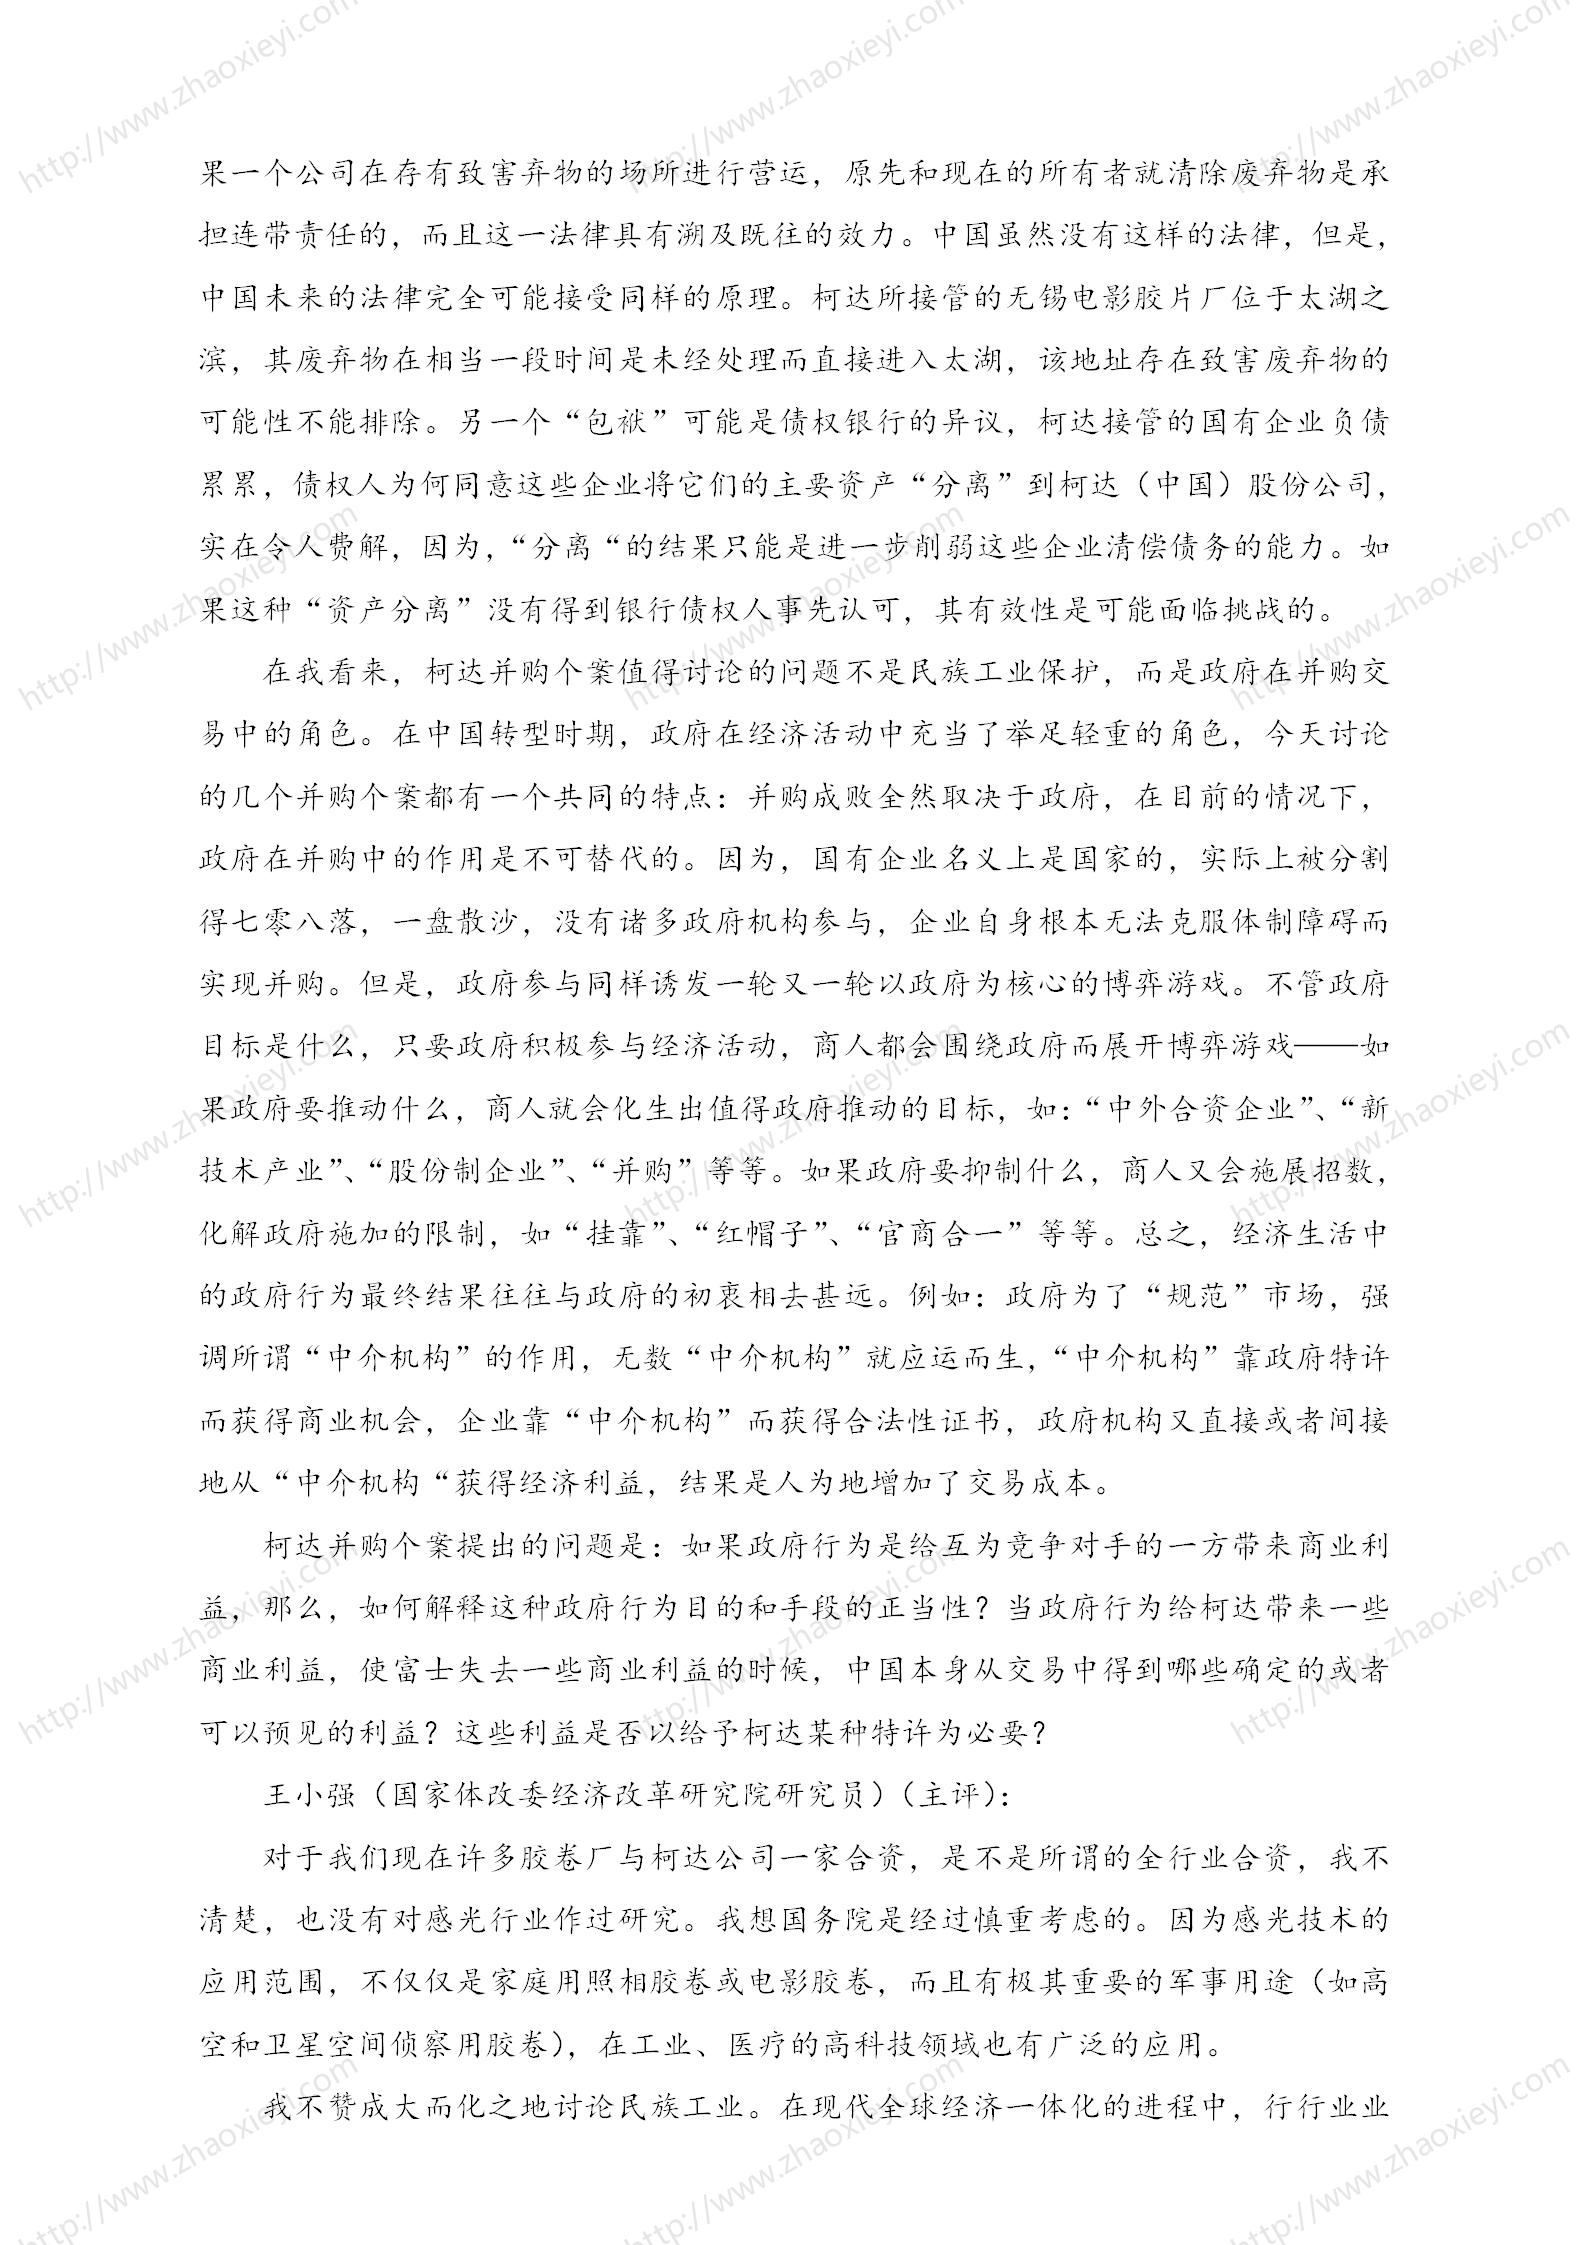 中国企业并购经典案例_162.jpg